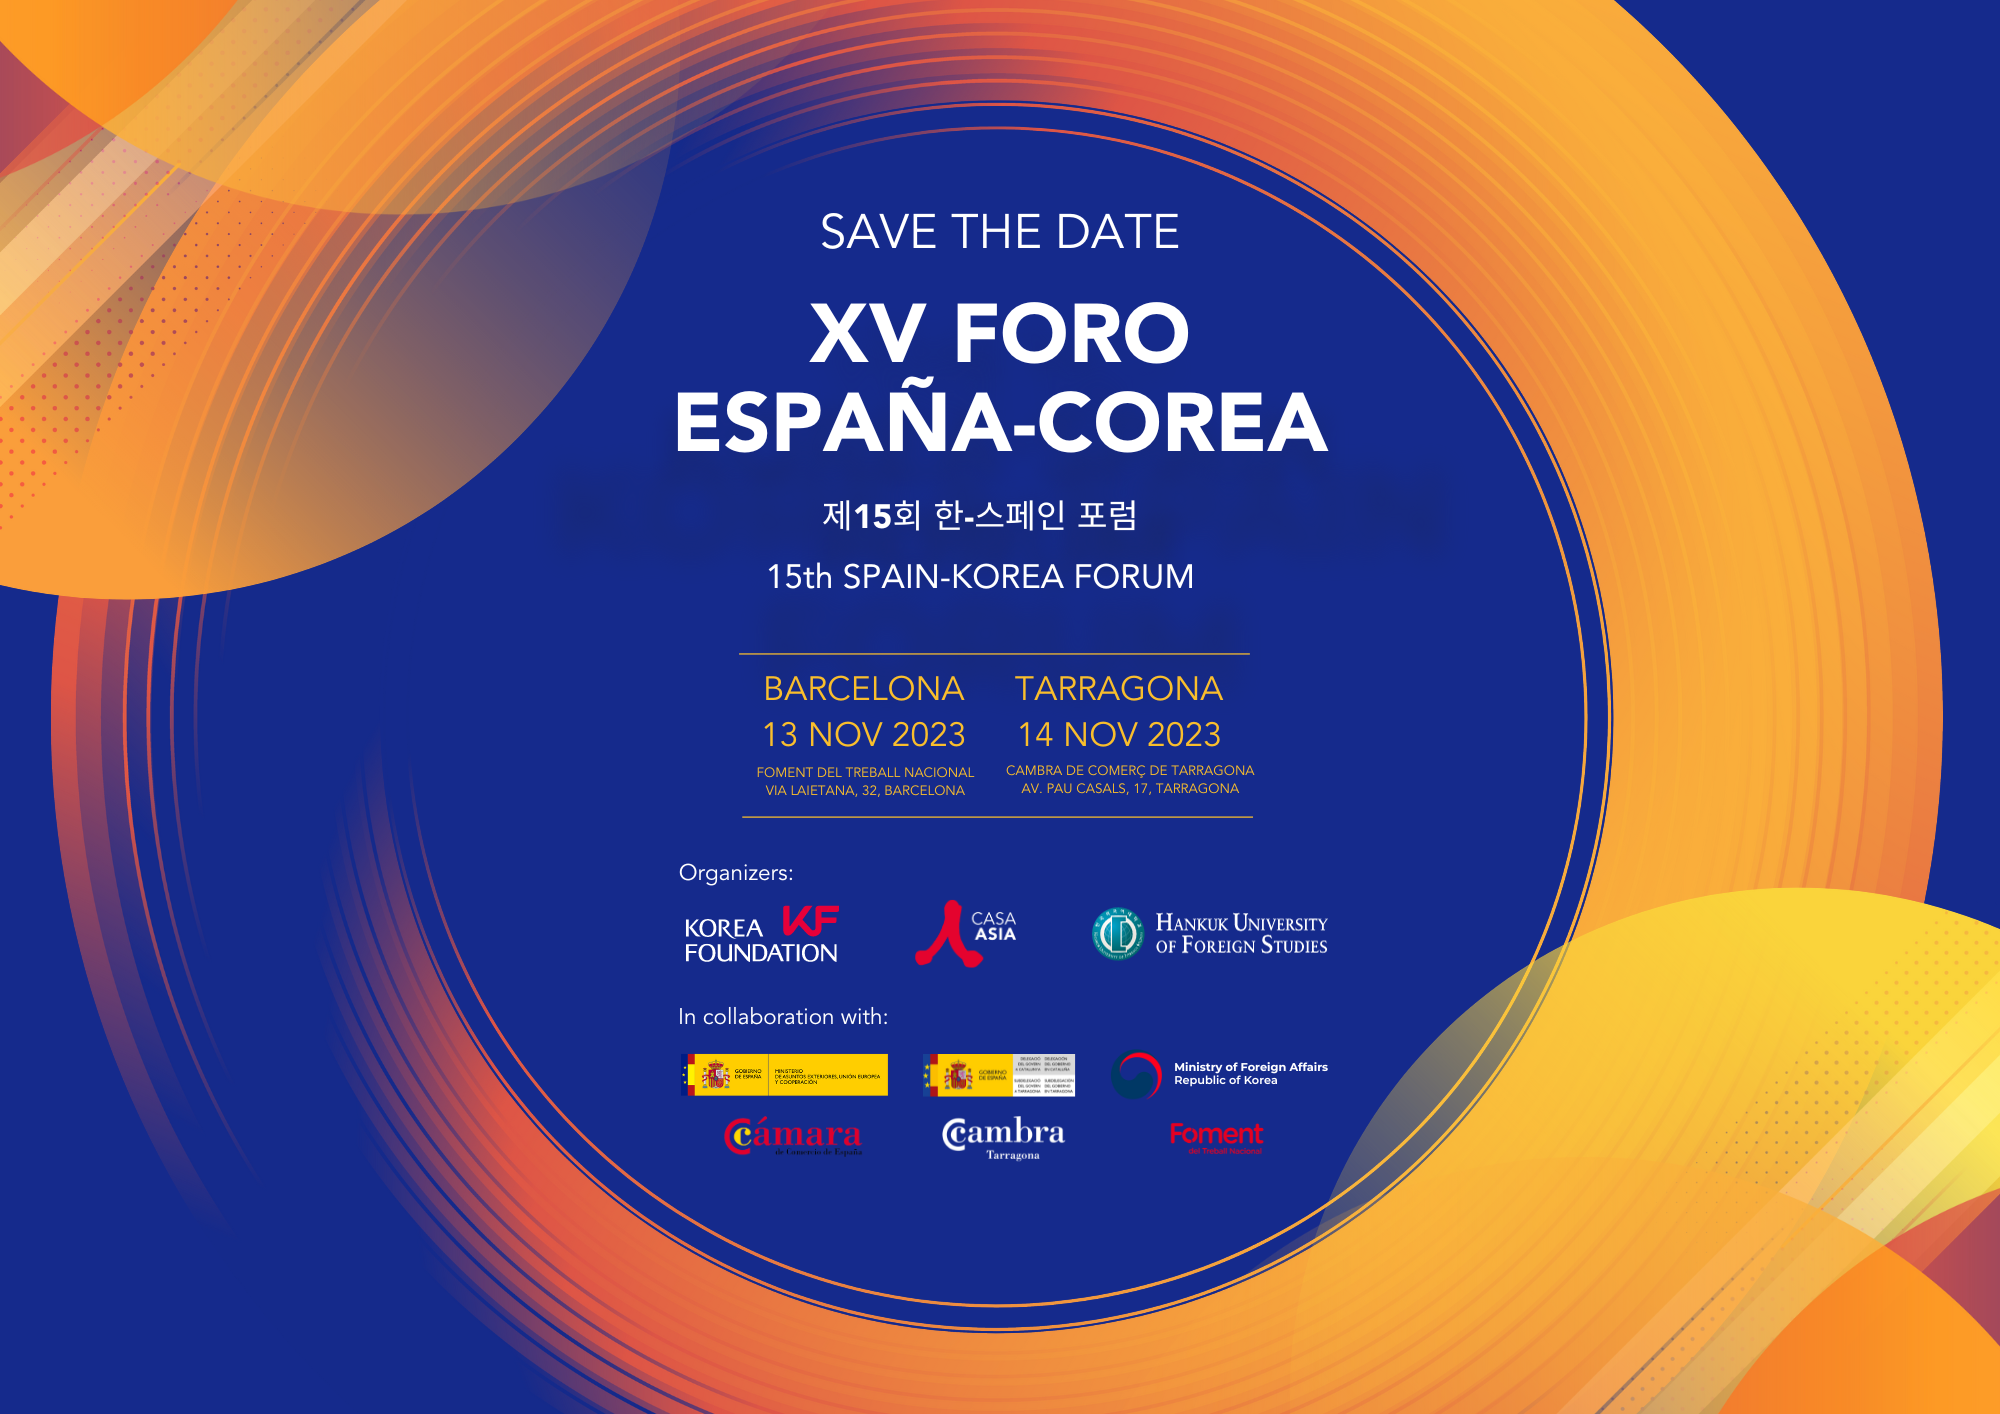 Activitat Externa: XV Foro España-Corea, 13 y 14 de noviembre de 2023, Barcelona y Tarragona